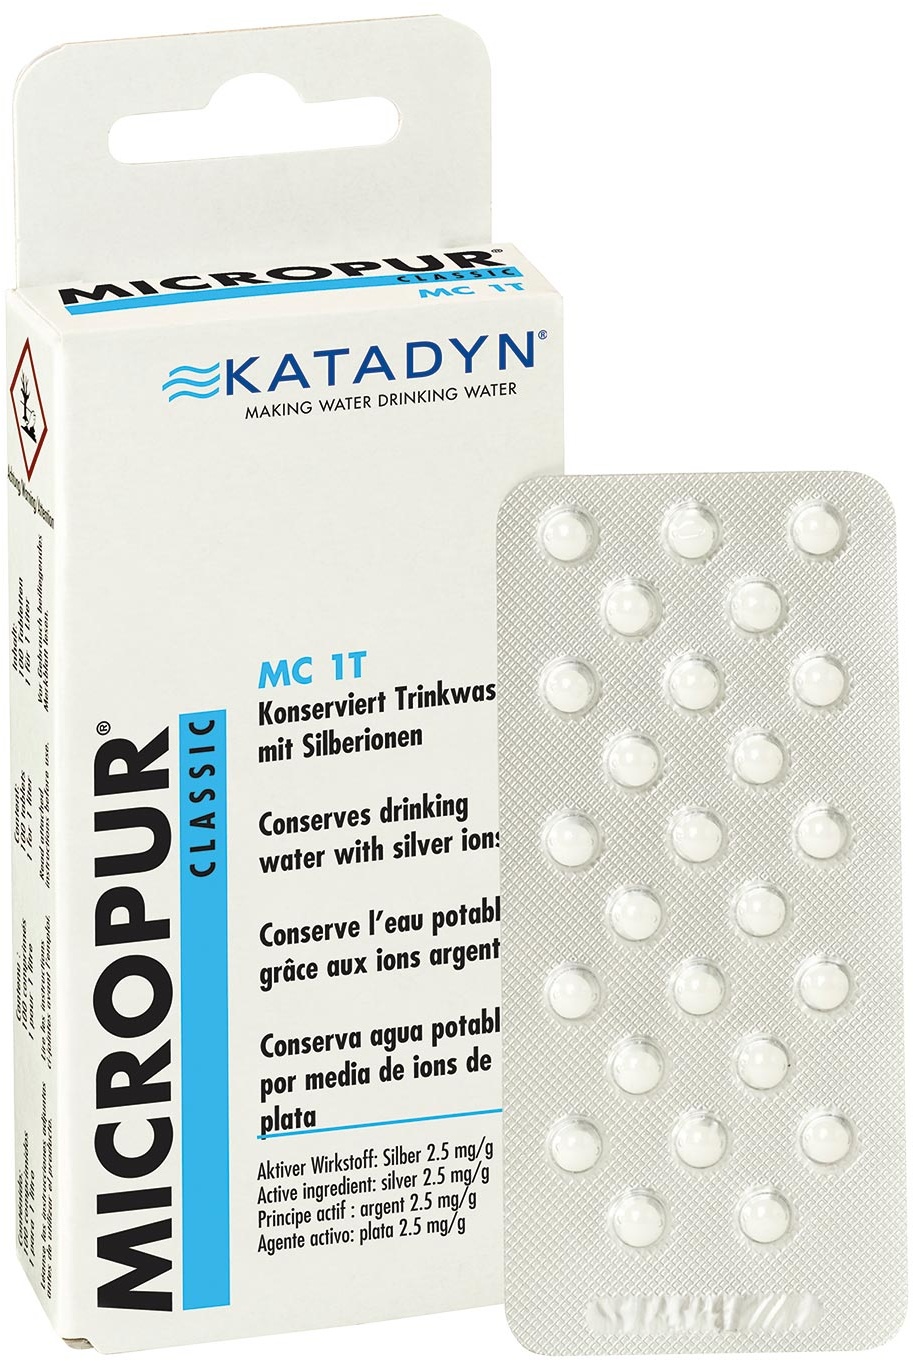 Katadyn Micropur Classic MC 1T 50 Tabletten